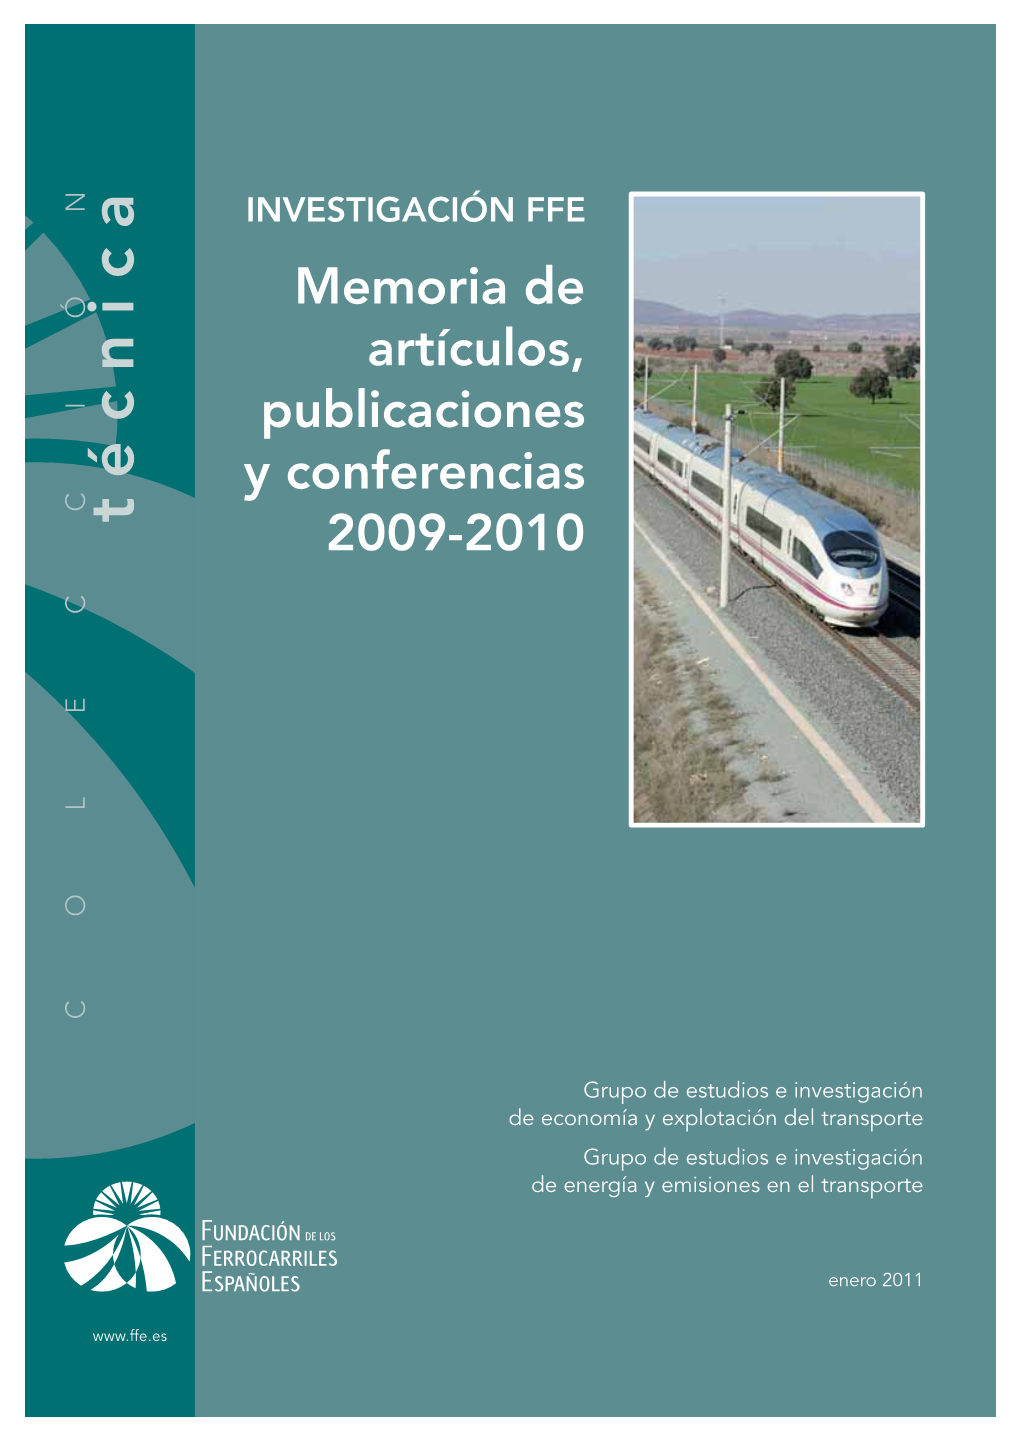 Investigación Fundación De Los Ferrocarriles Españoles